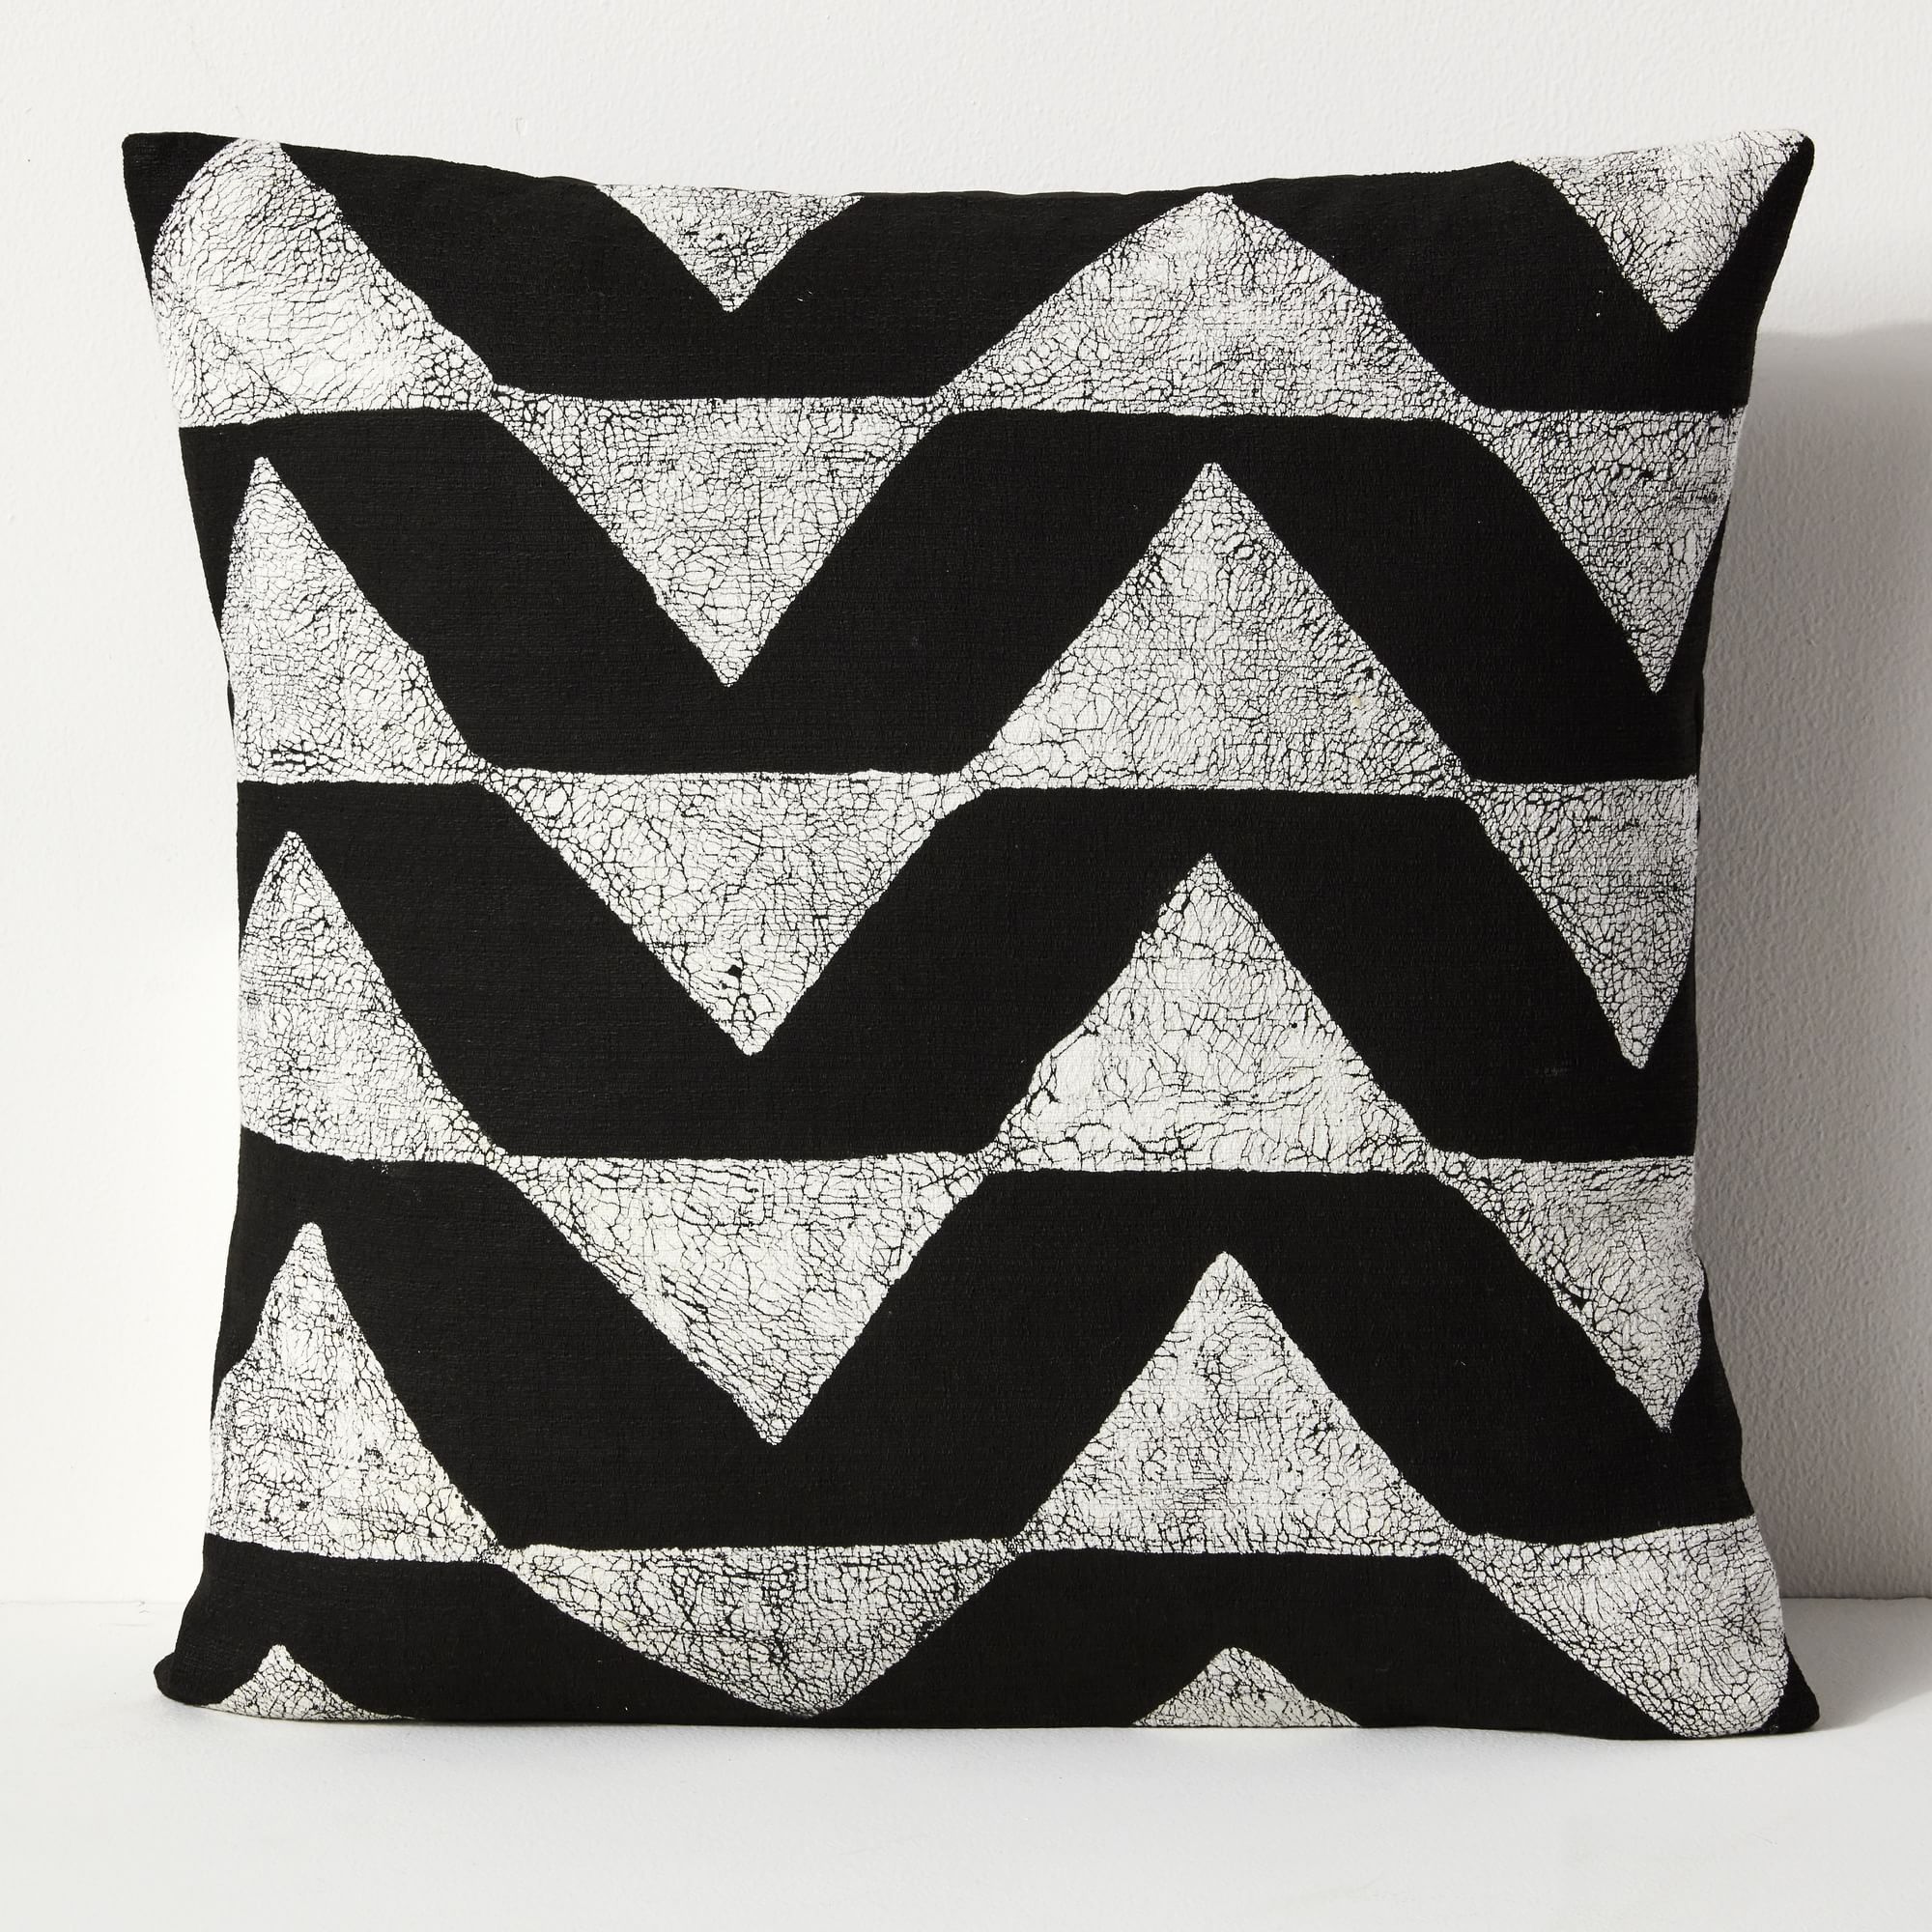 Sadza Batik Triangles Pillow Cover - Black | West Elm